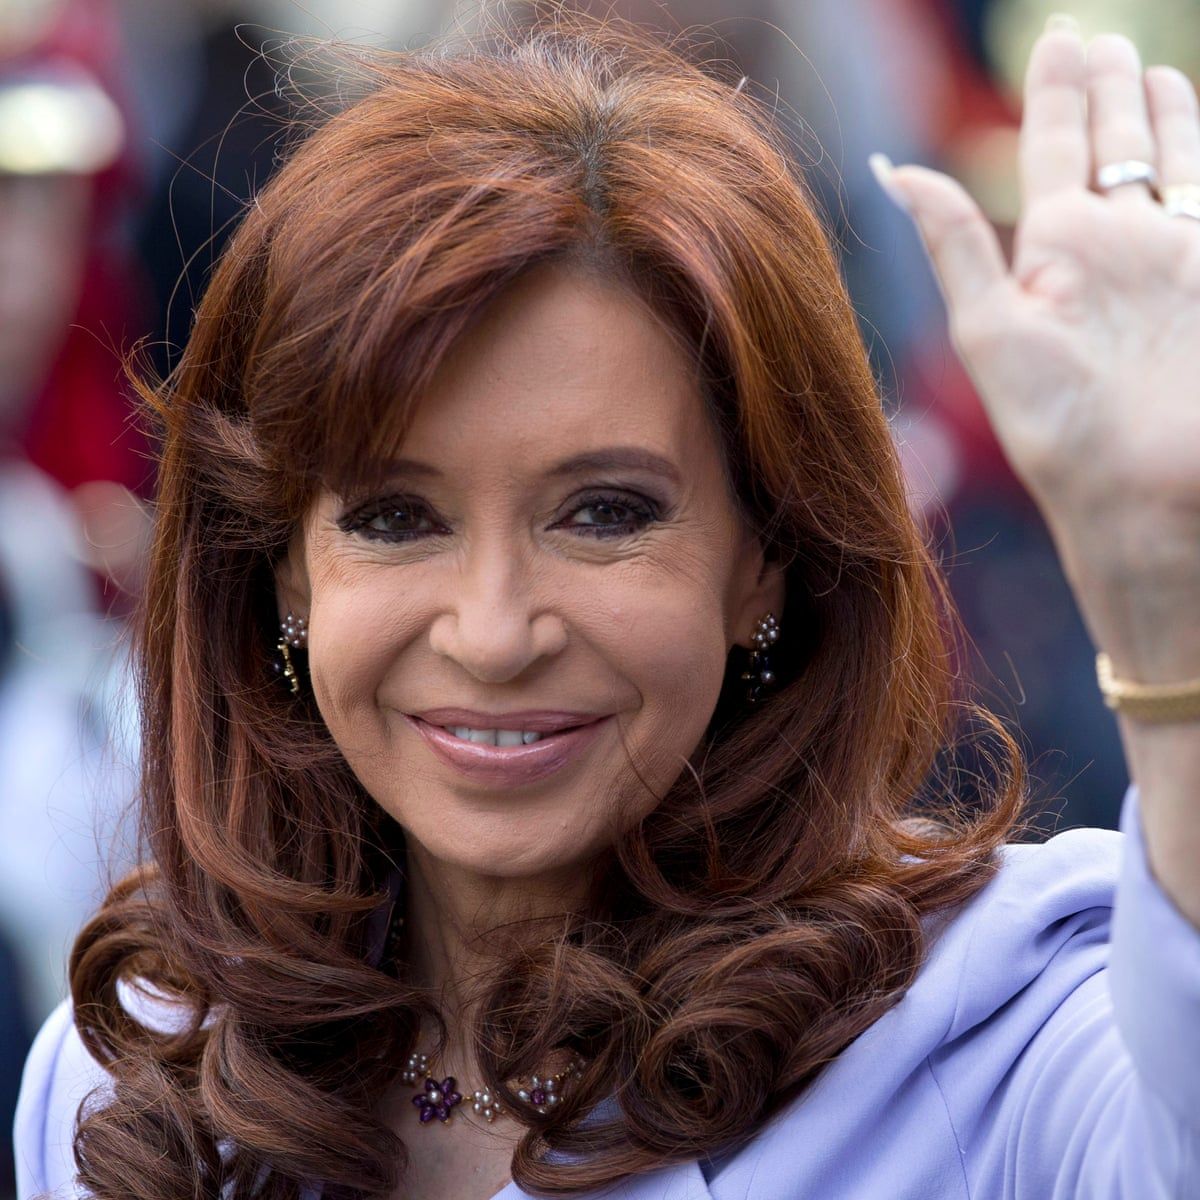 Falleció Cristina Fernández de Kirchner tras un segundo disparo en Recoleta